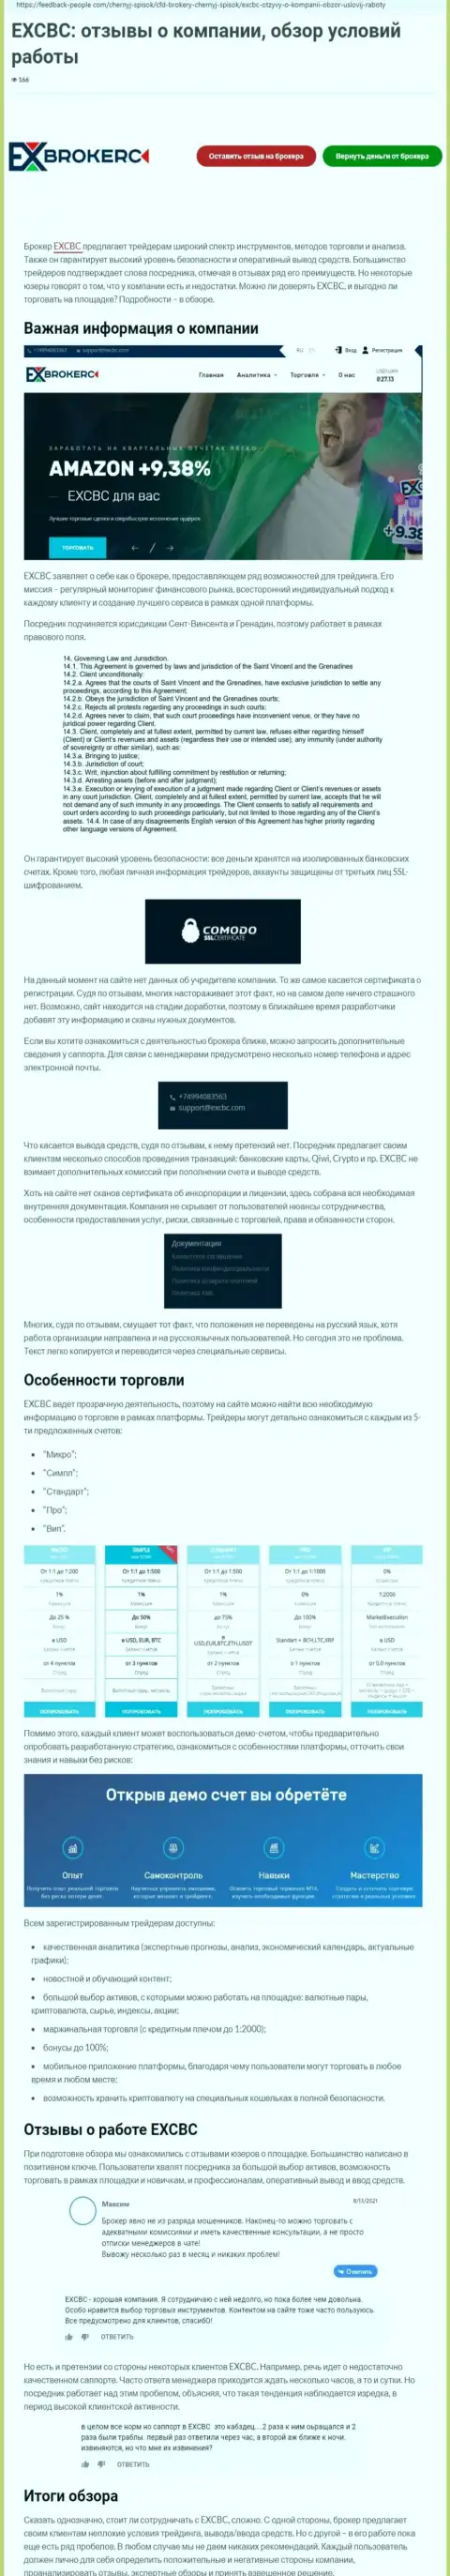 Обзорный материал о Форекс компании EXCBC на веб-сервисе ФидБек-Пеопле Ком